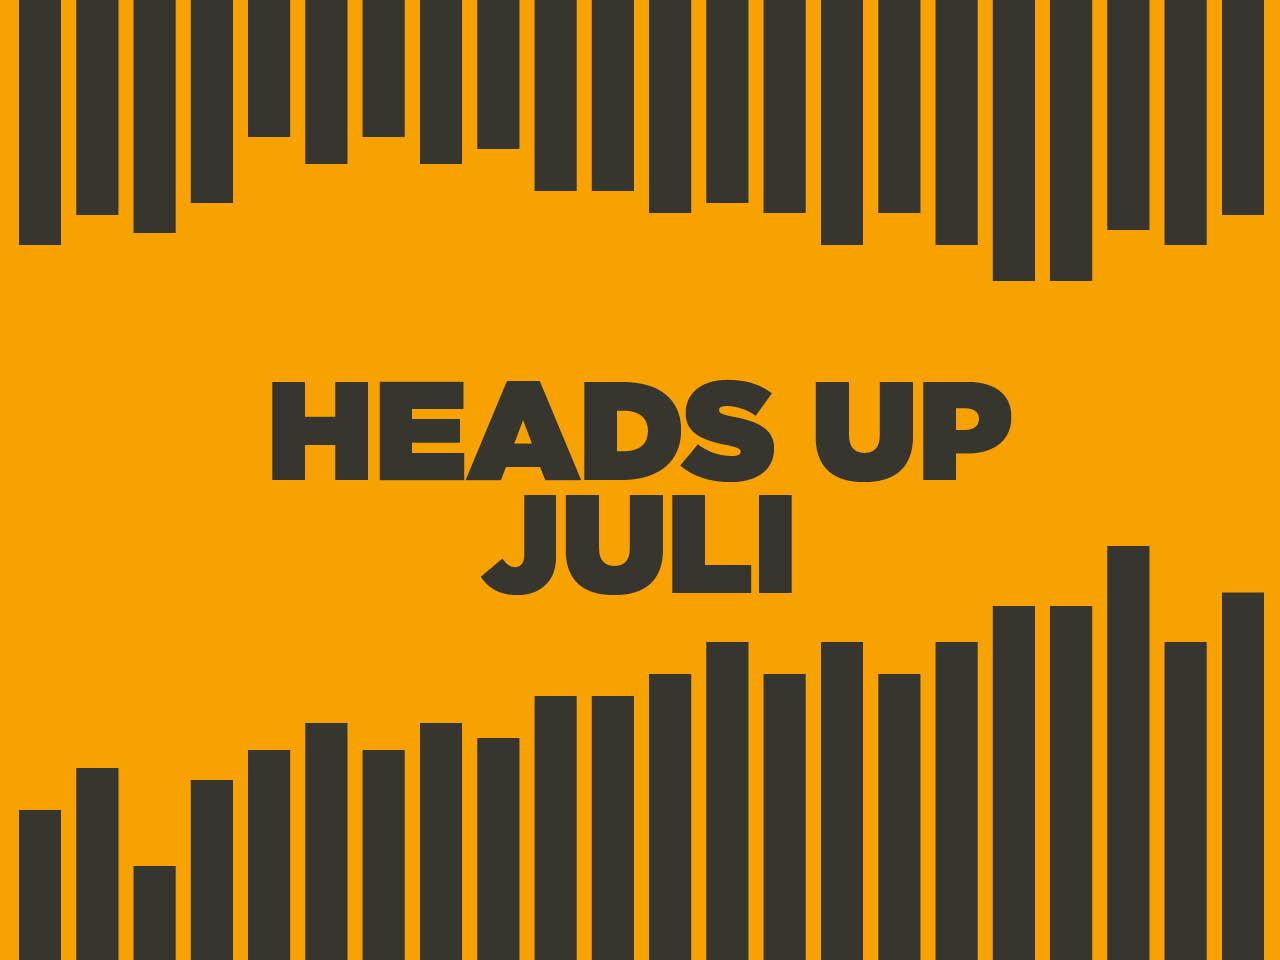 Heads up juli